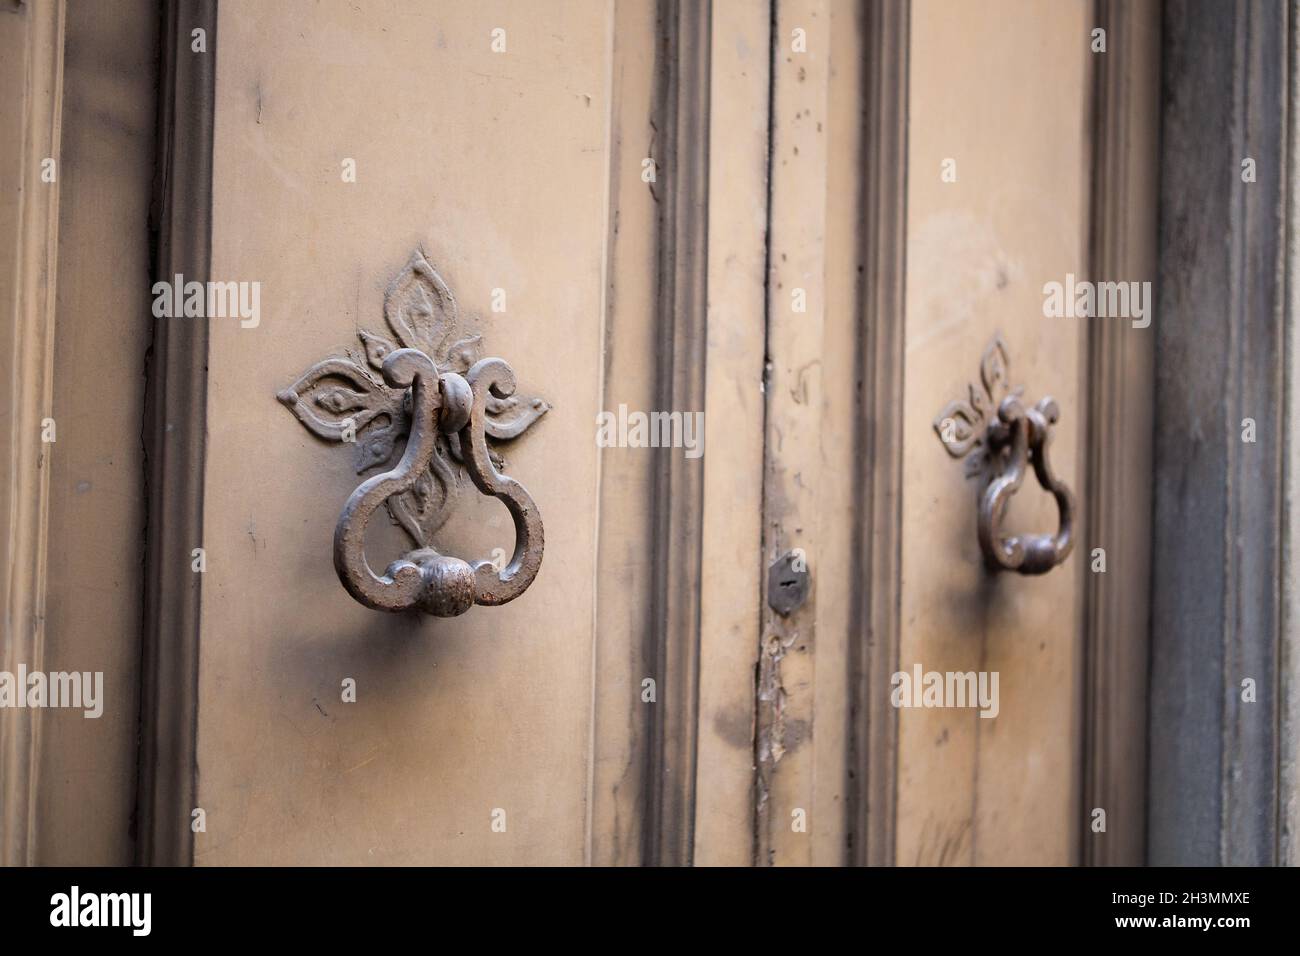 Antique metal handle on front door. Vintage door handles in painted metal. Close up shot Stock Photo